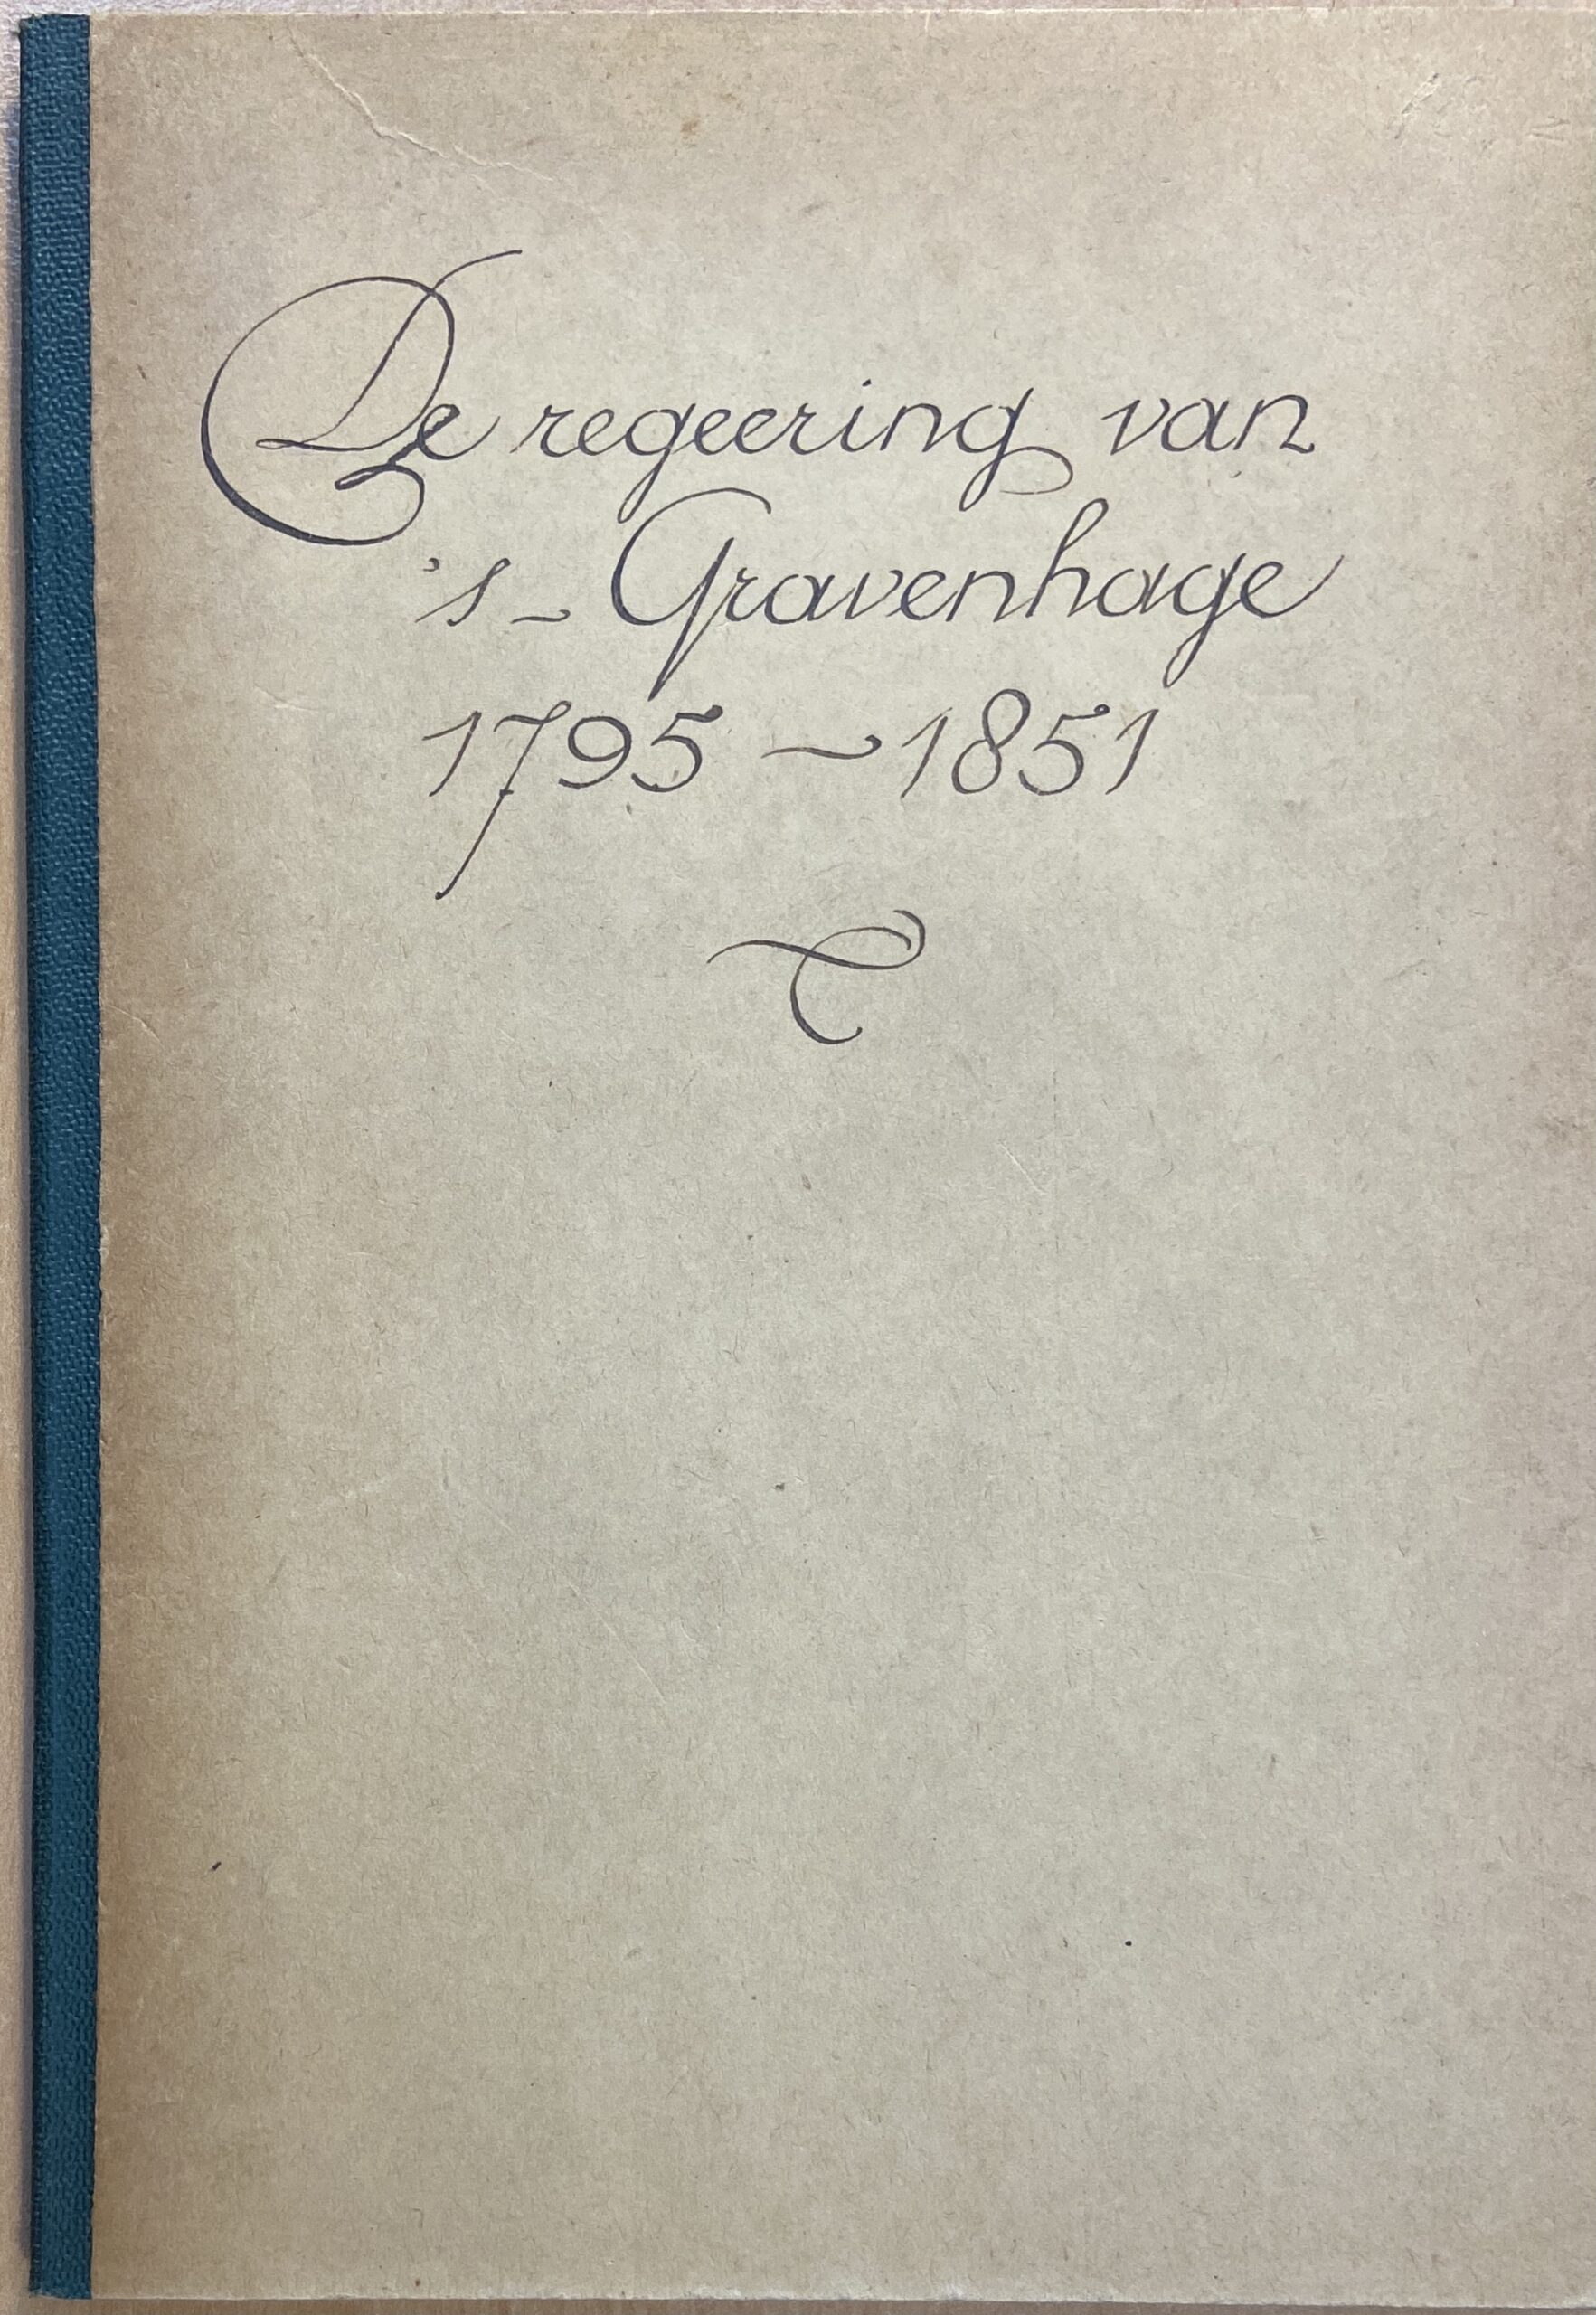 [History The Hague] Dr. H.E. van Gelder; “De regeering van 's-Gravenhage, 1795-1851”; Uit: Jaarboek Die Haghe; Uitgeverij Mouton & Co.; Den Haag 1908, p. 215 - 258 pp.